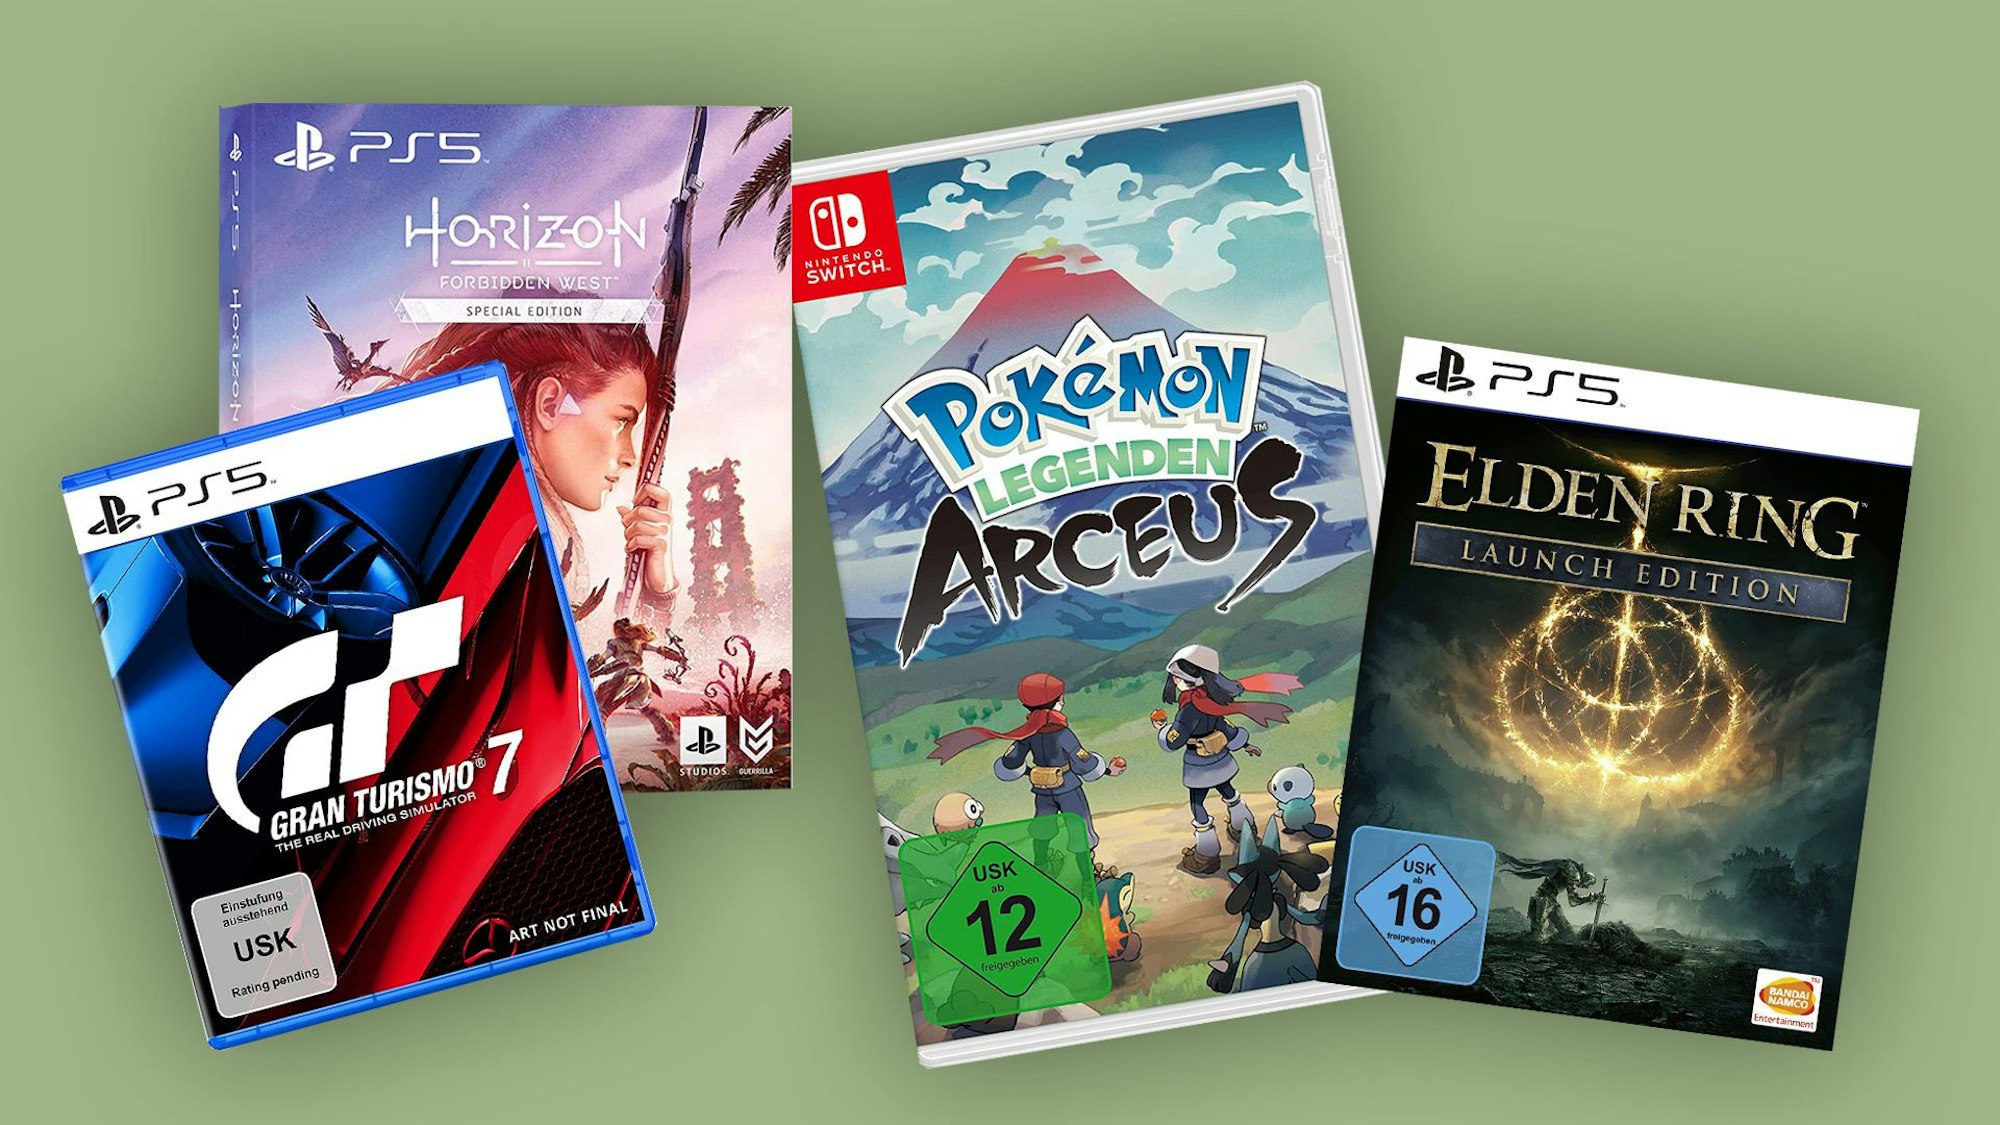 Gran Turismo 7, Horizon Forbidden West, Pokémon Legends: Arceus, Elden Ring: Beste Games für 2022